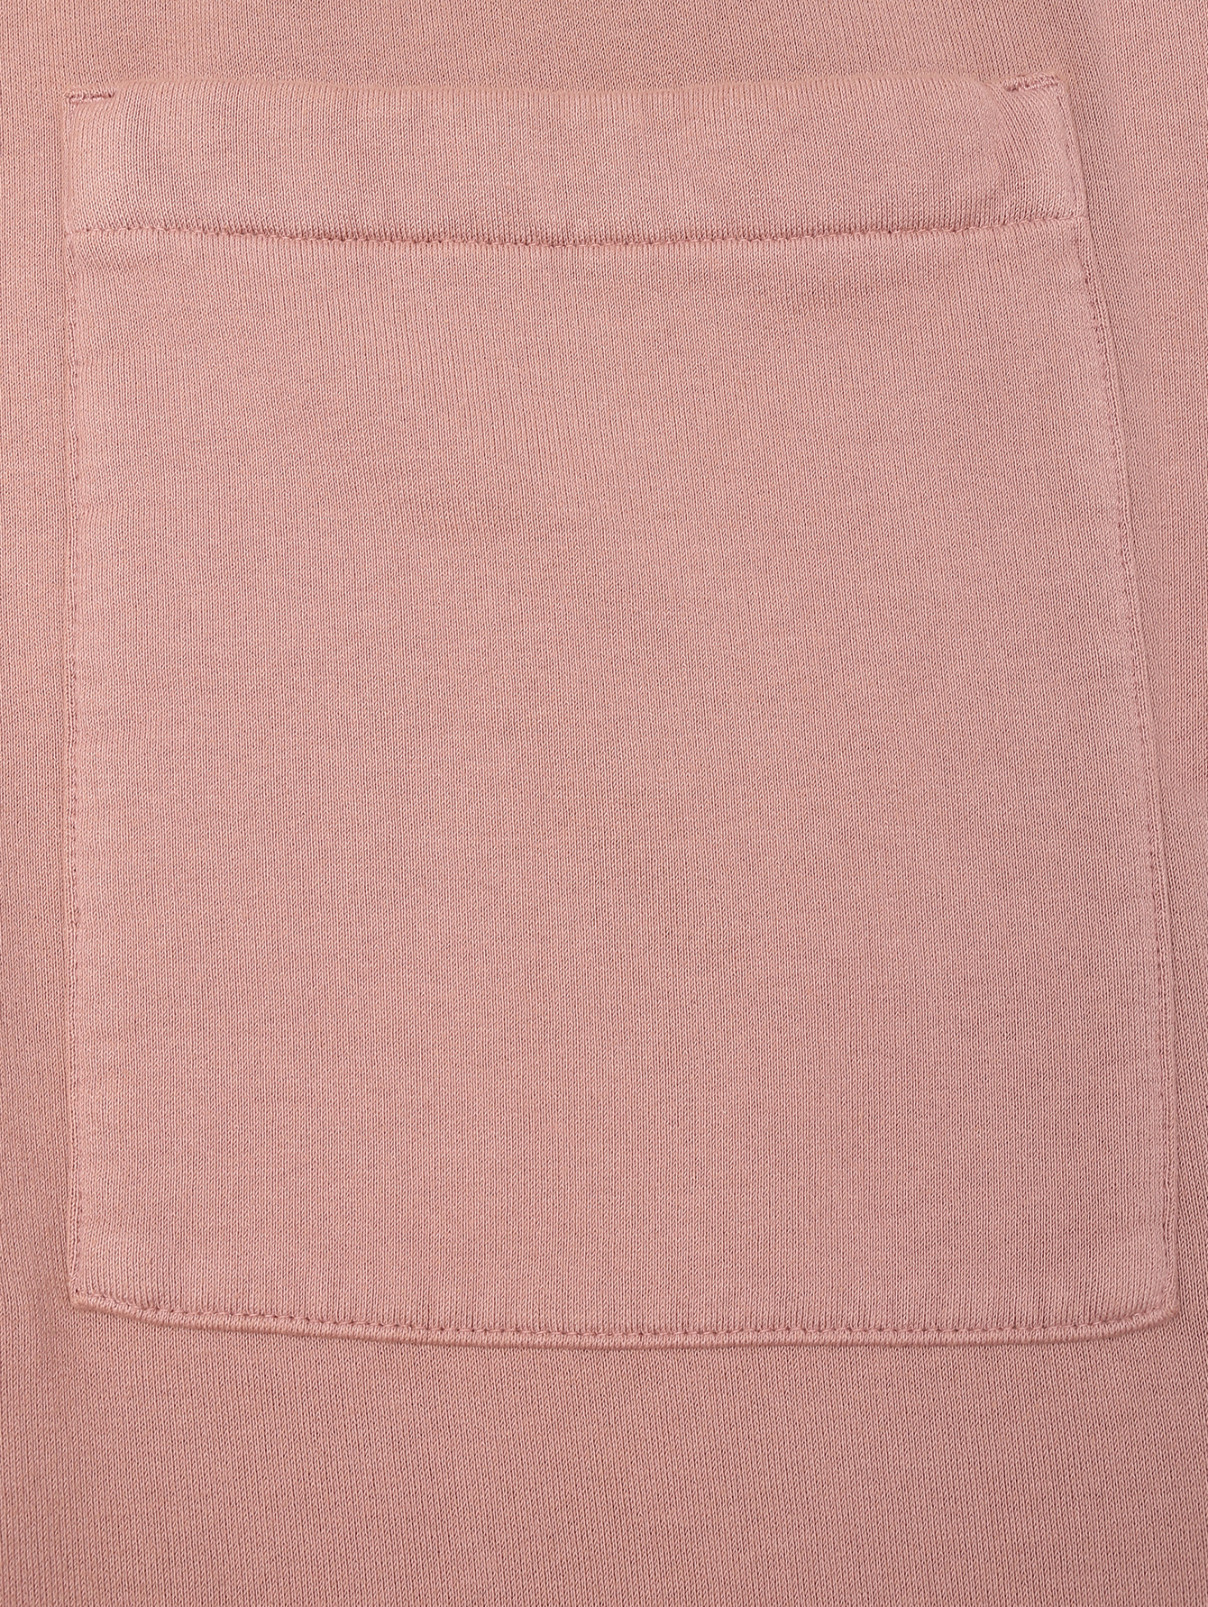 Однотонные брюки из хлопка на резинке Barena  –  Деталь  – Цвет:  Розовый